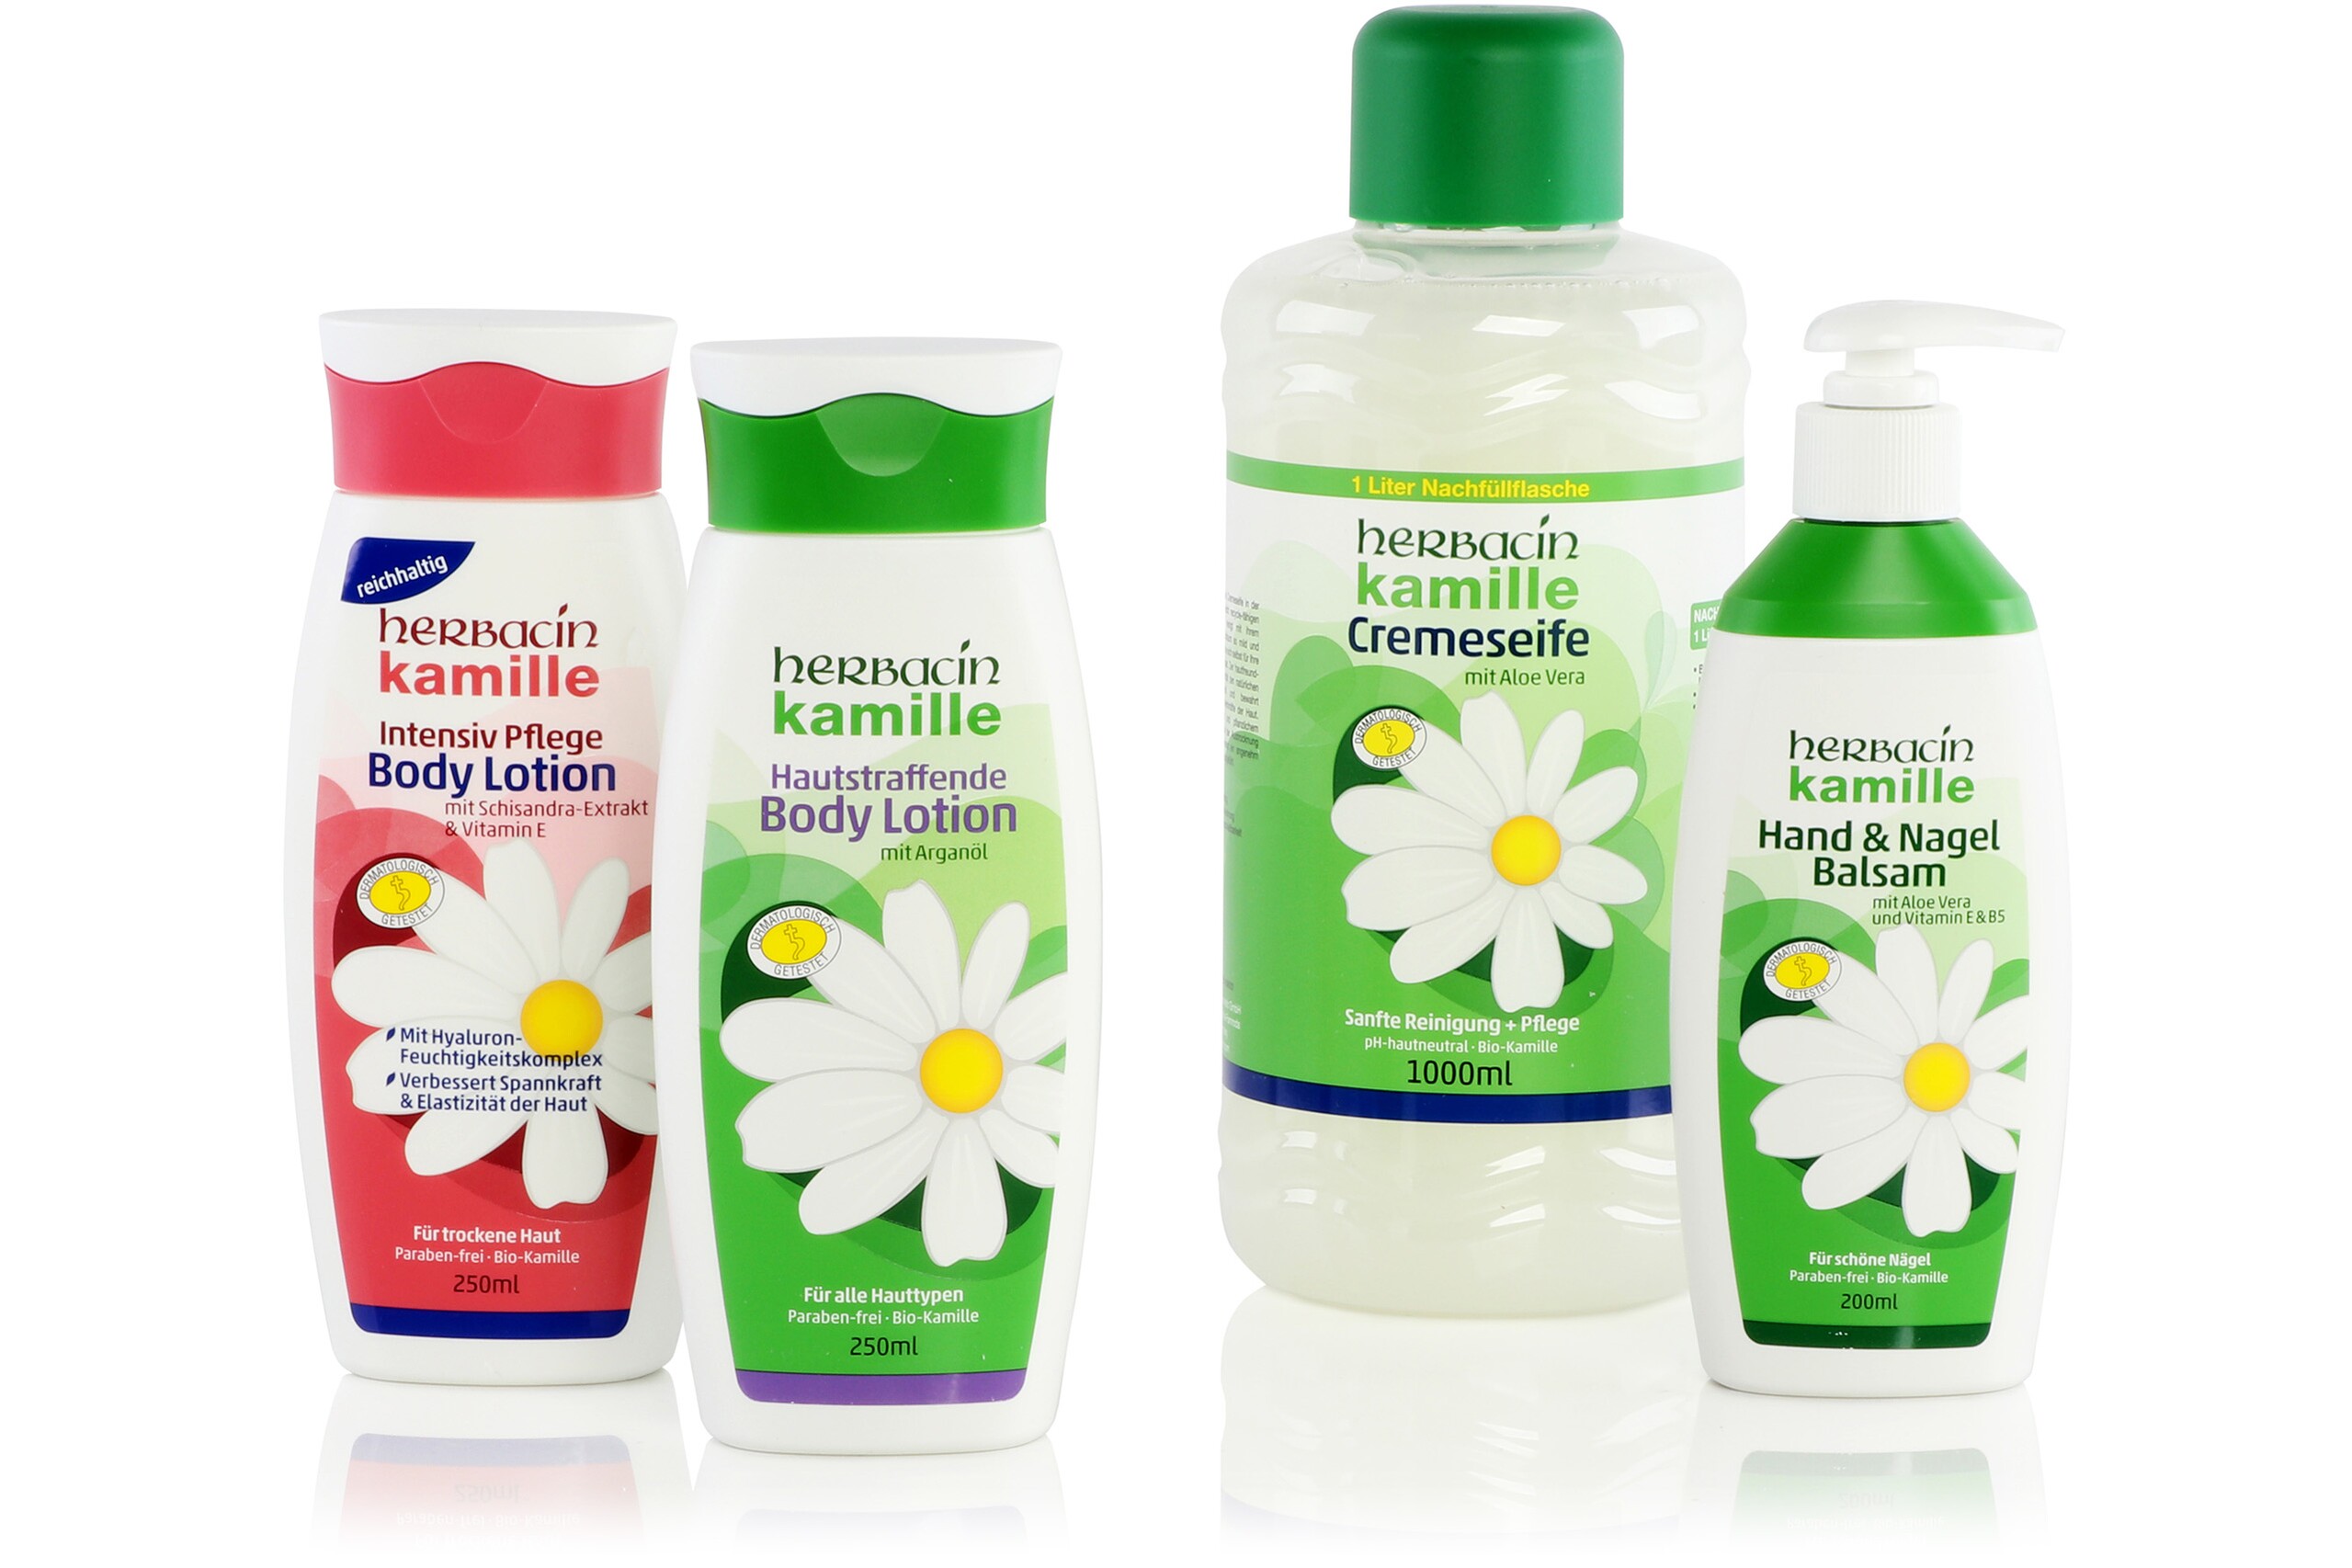 Quatre bouteilles de produits de soins corporels de la marque Herbacin, recouvertes d'étiquettes avec des éléments haptiques.